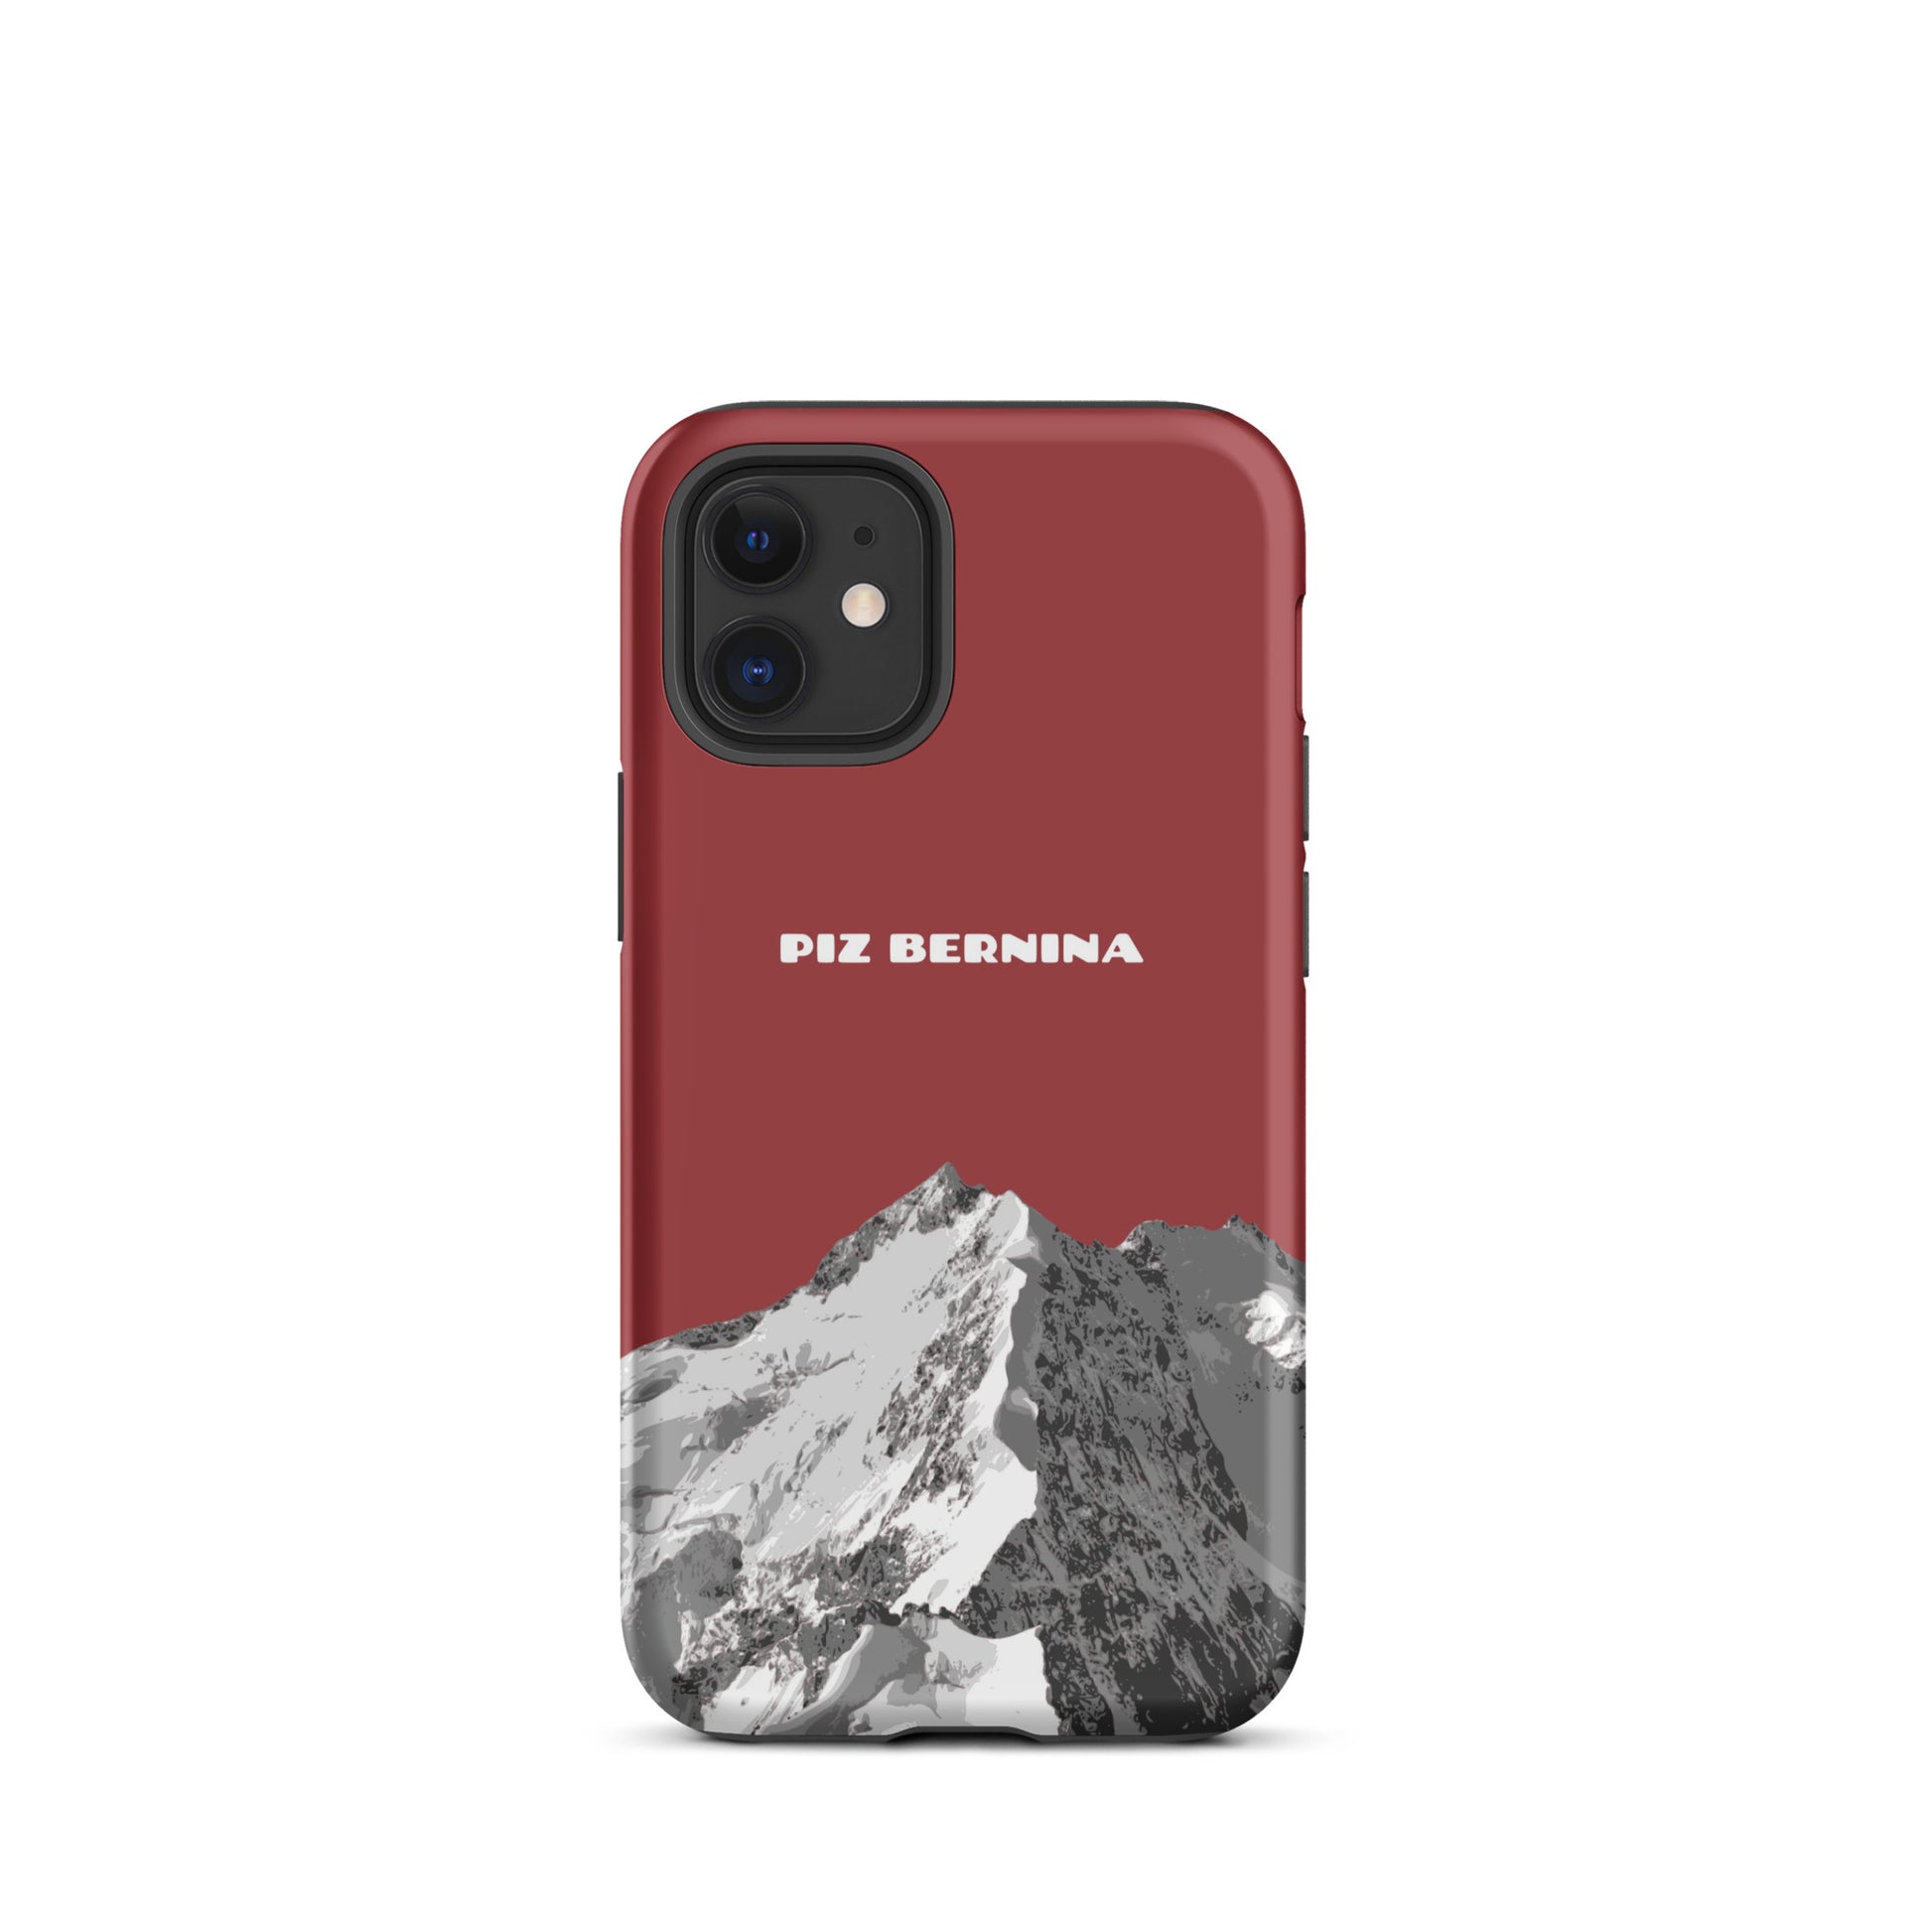 Hülle für das iPhone 12 Mini von Apple in der Farbe Rot, dass den Piz Bernina in Graubünden zeigt.